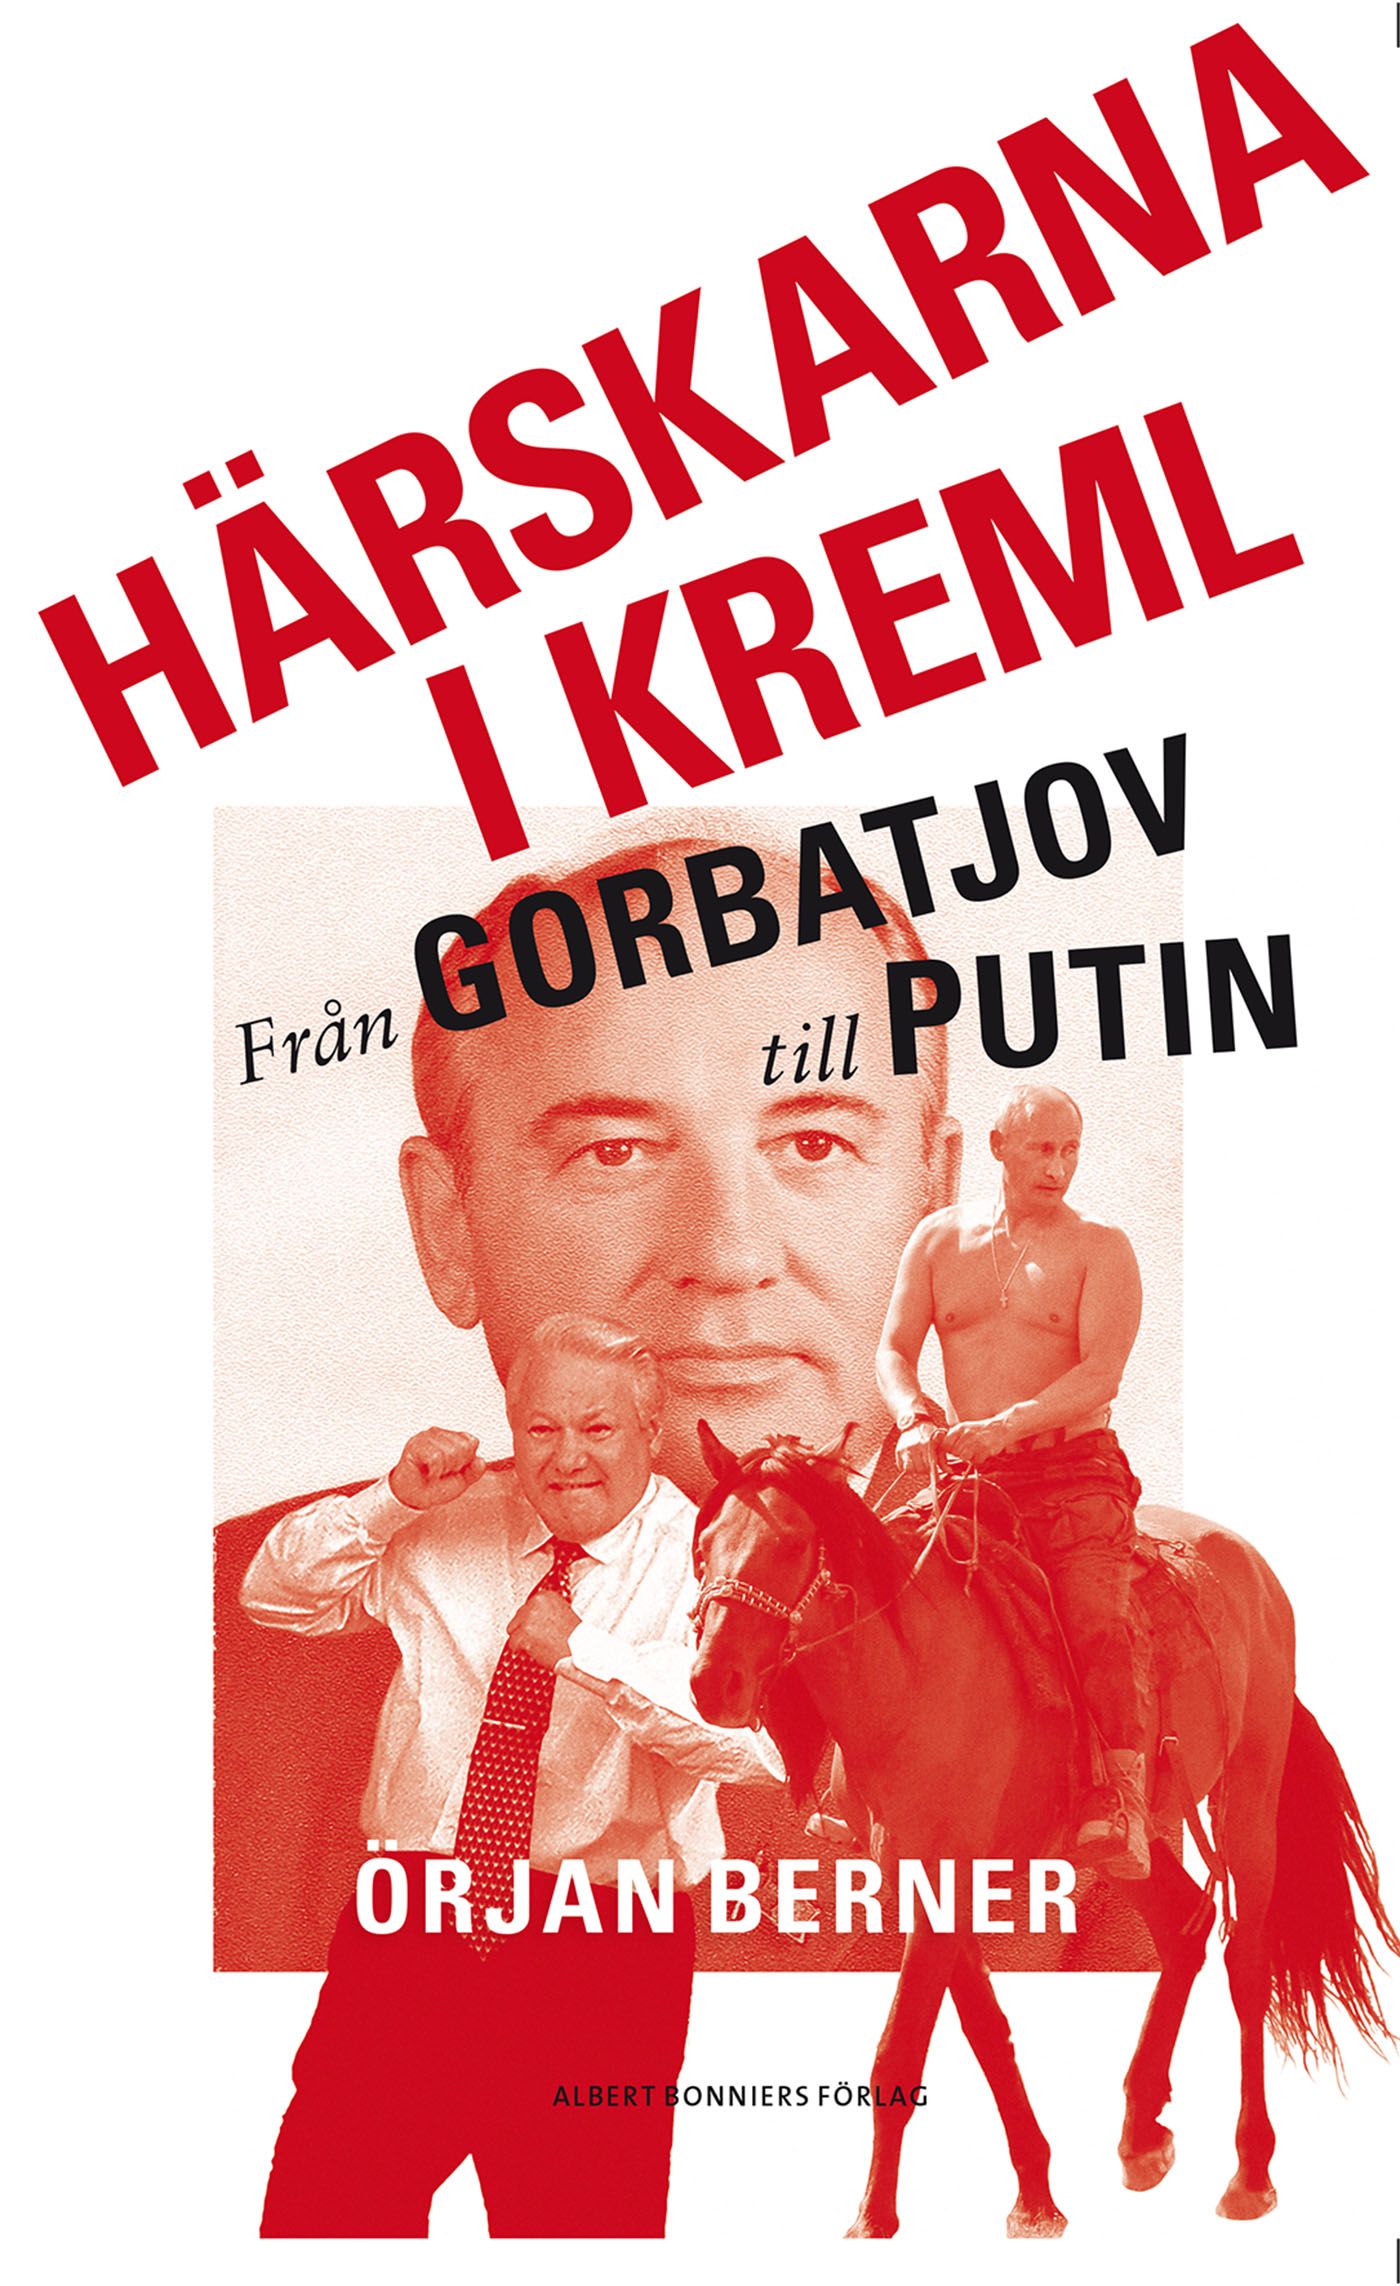 Härskarna i Kreml - från Gorbatjov till Putin, e-bok av Örjan Berner